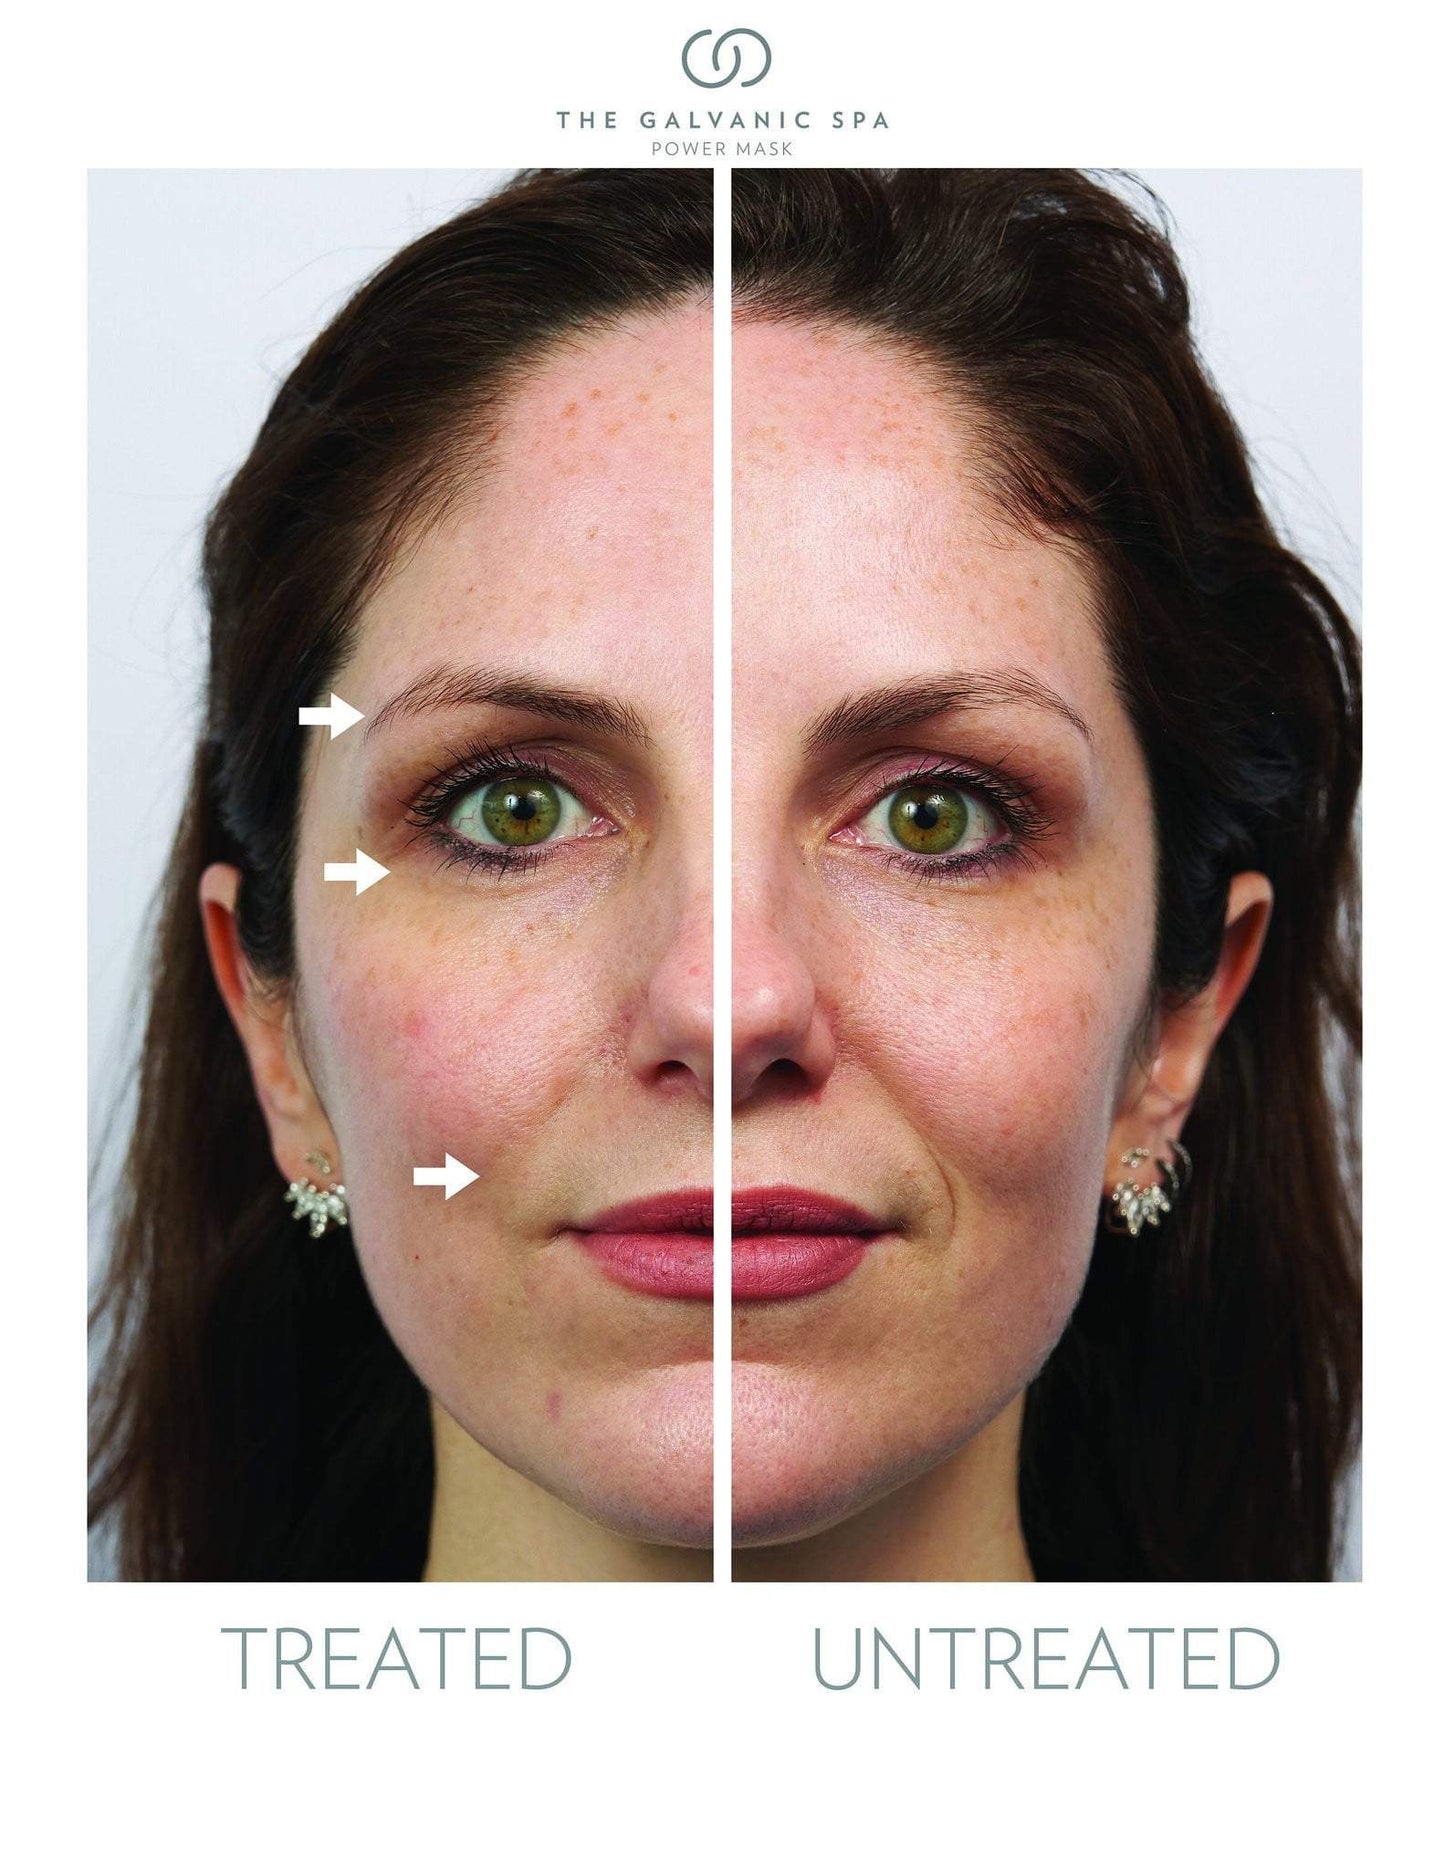 Dwie połówki twarzy kobieta leczona i nieleczona Galvanic Spa